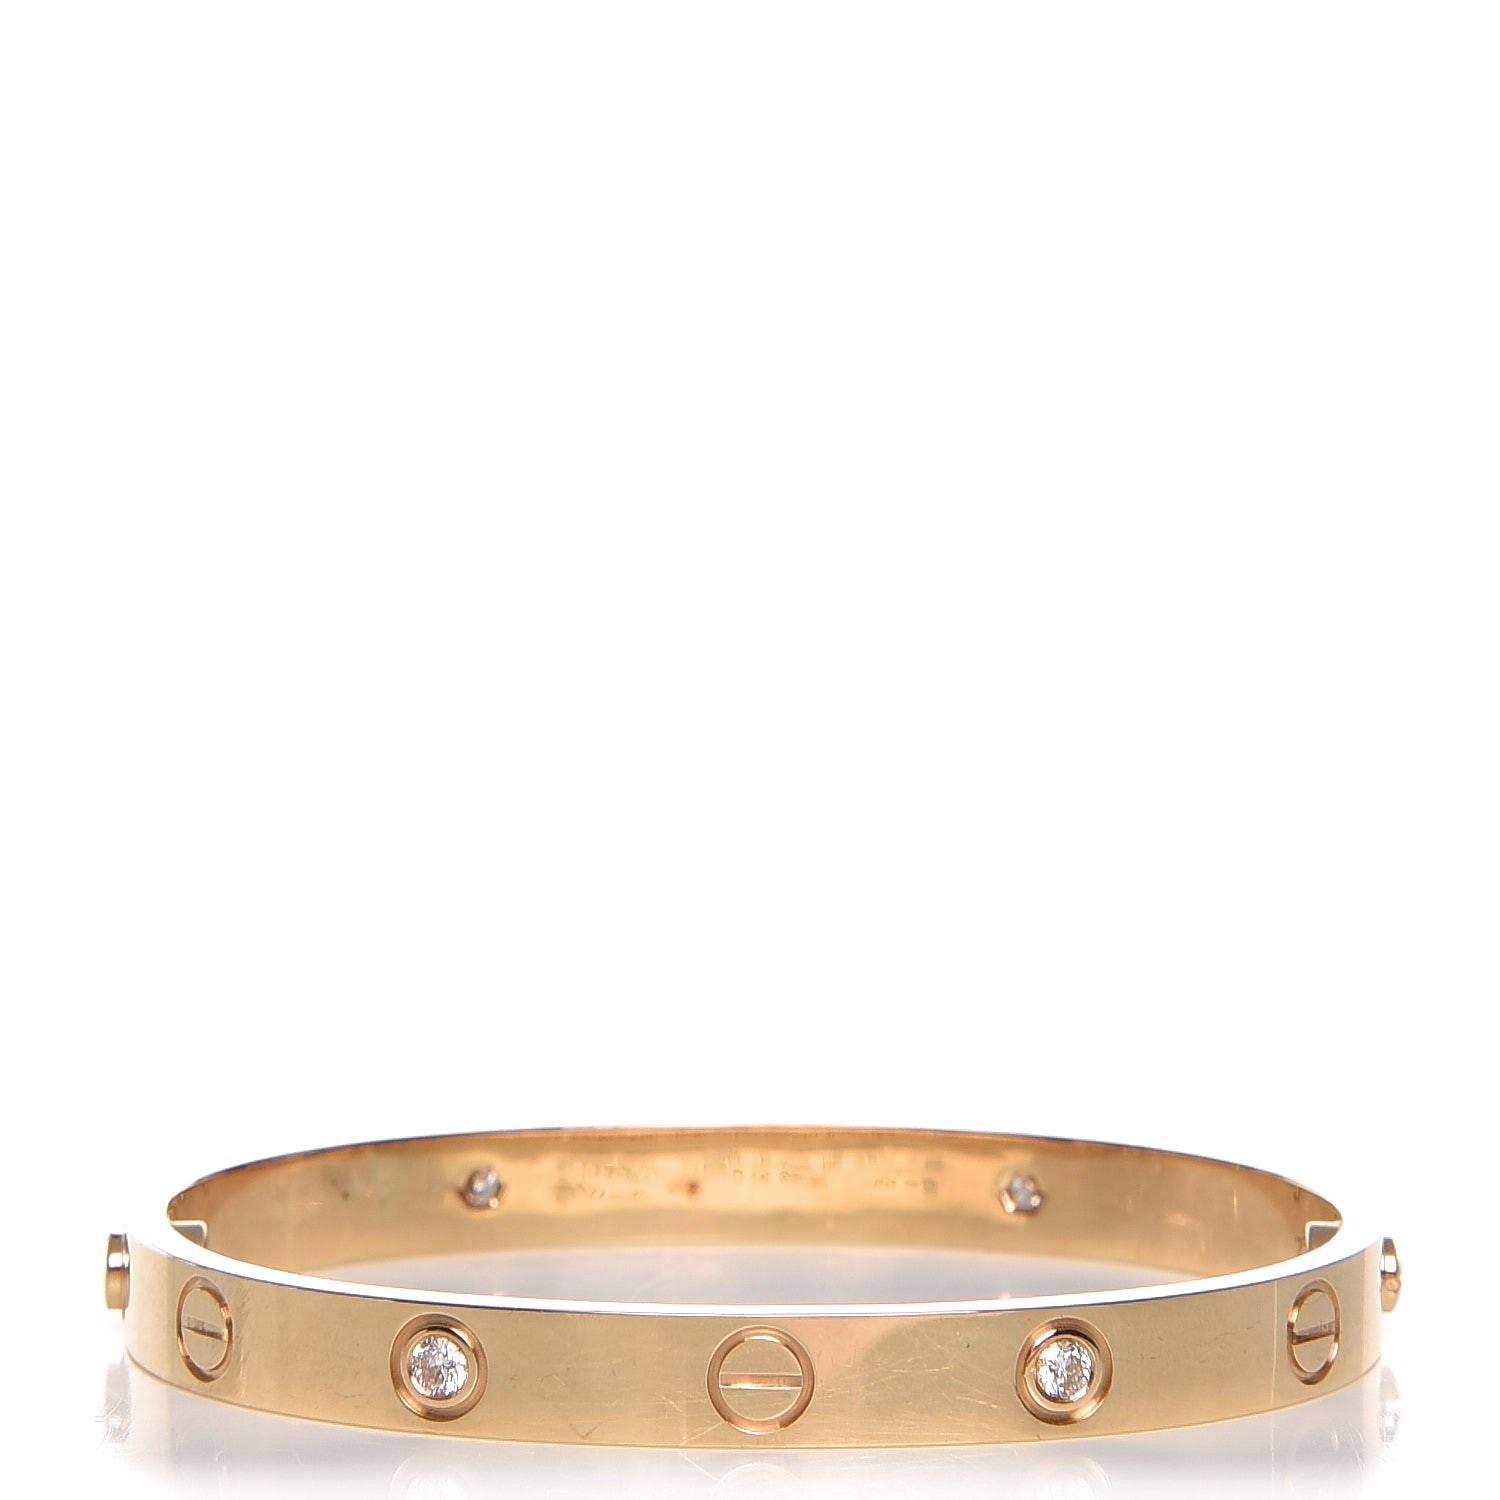 4 diamond cartier love bracelet